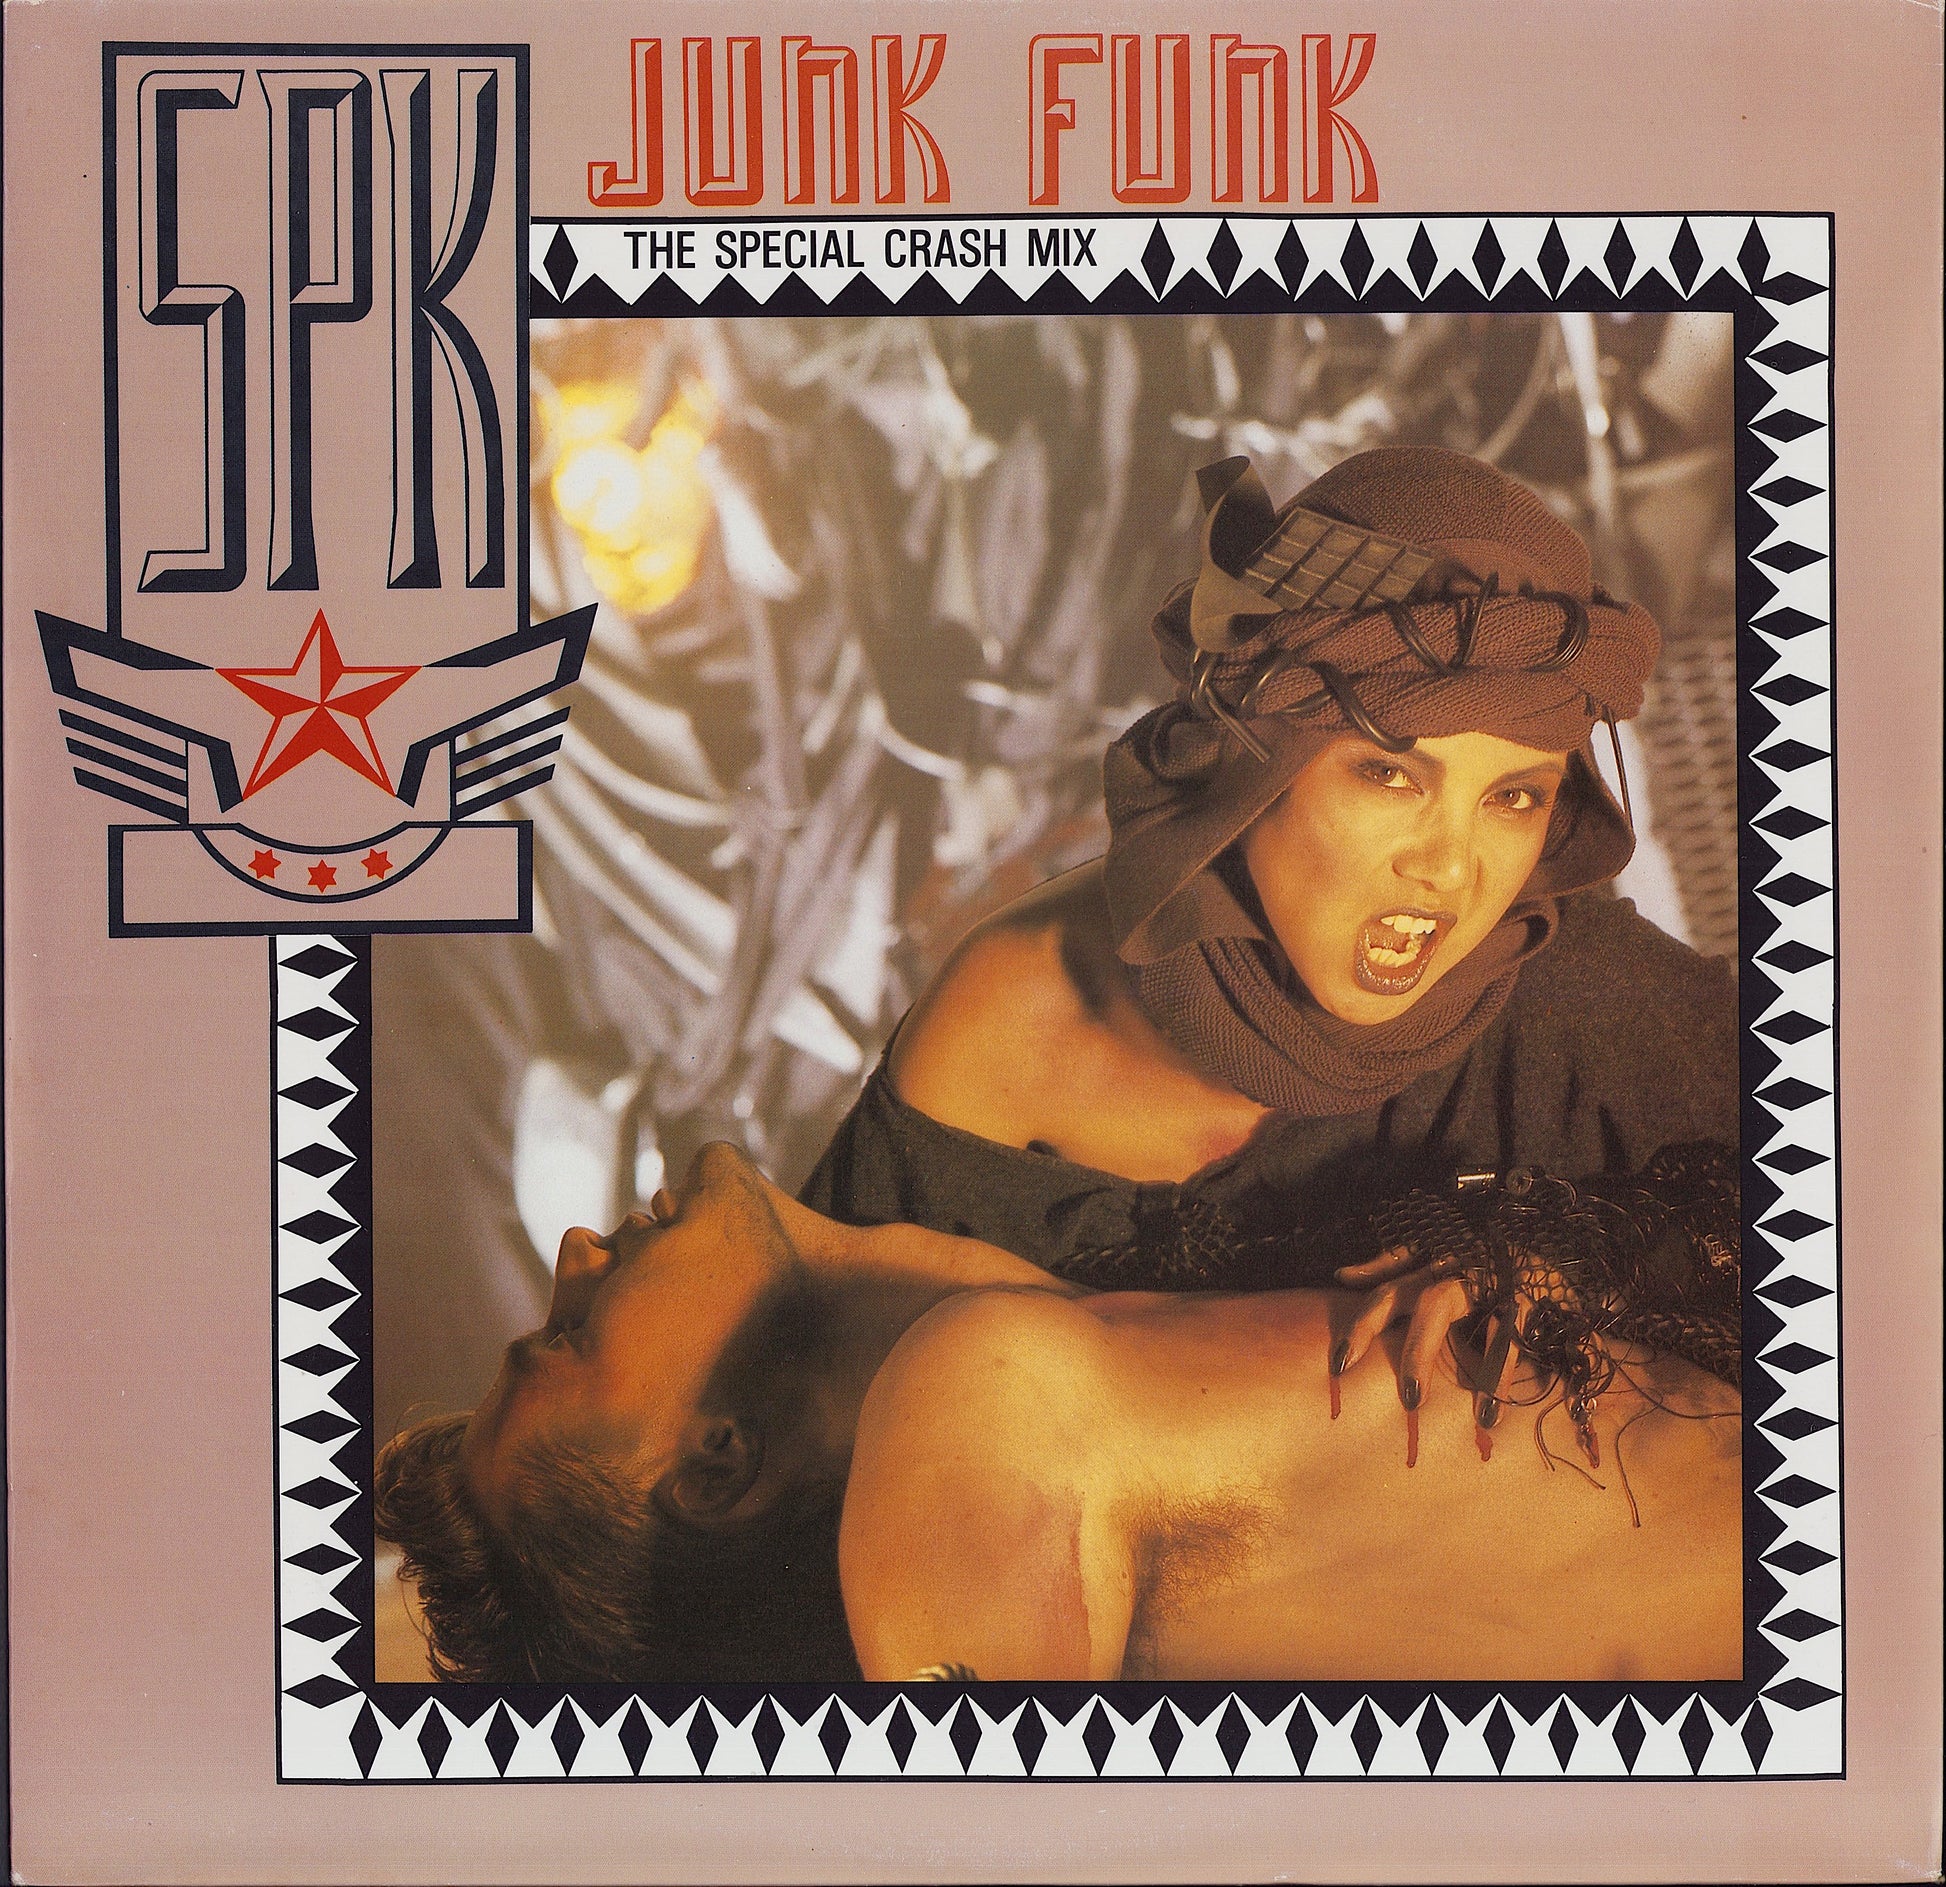 SPK ‎- Junk Funk The Special Crash Mix Vinyl 12"